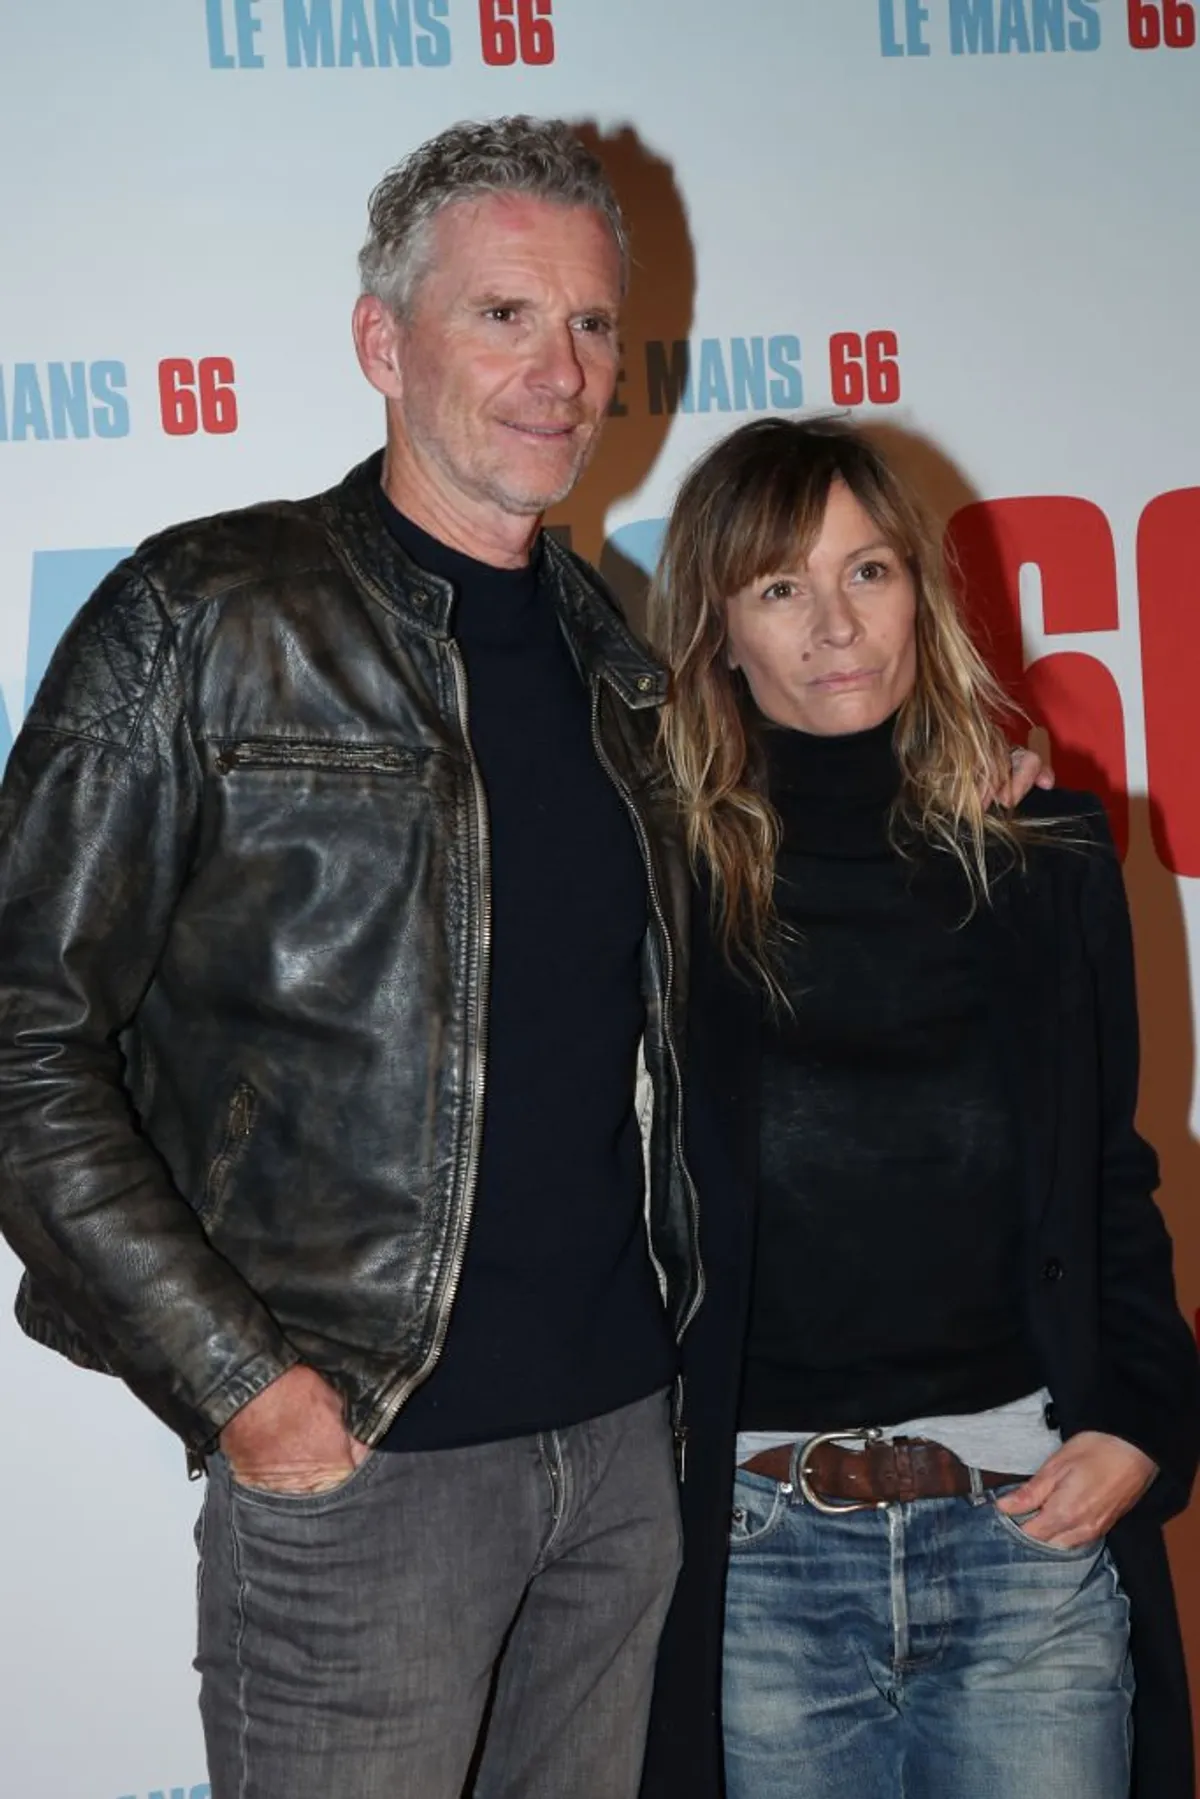 Denis Brogniart et son épouse Hortense Brogniart assistent à la première de "Le Mans 66" au Cinéma Gaumont Champs Elysées le 06 octobre 2019 à Paris. | Photo : Getty Images